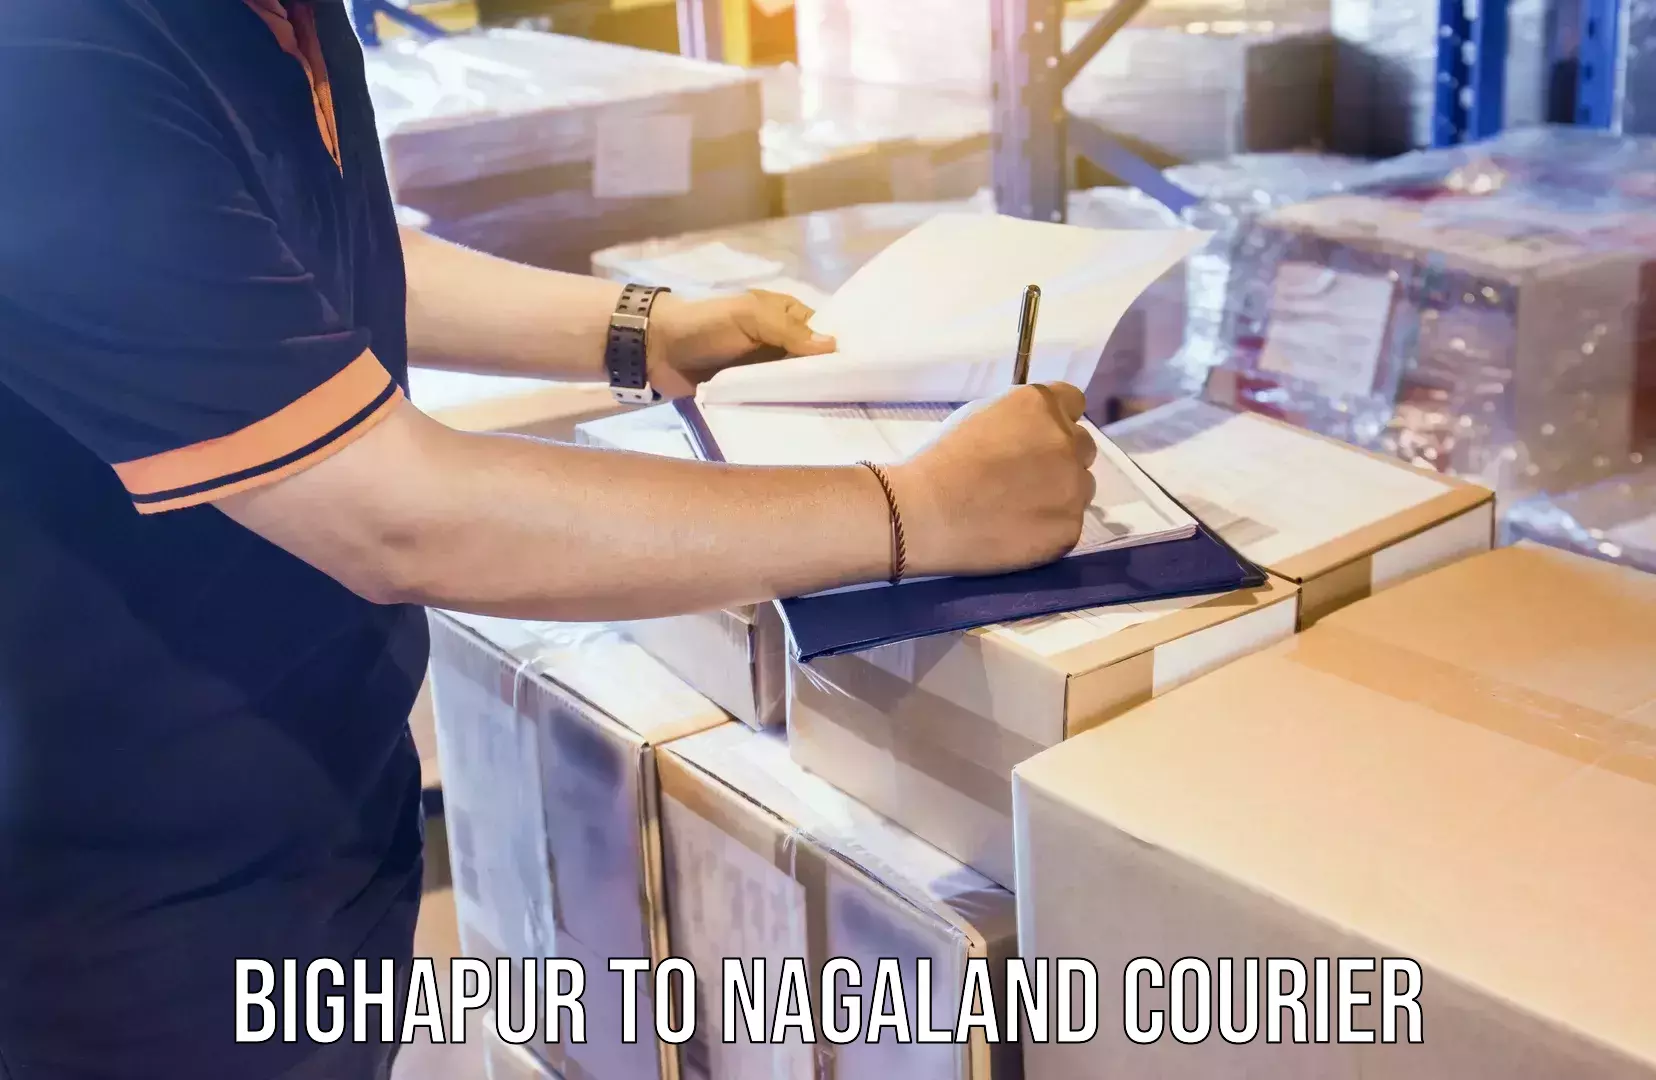 Digital courier platforms Bighapur to Nagaland